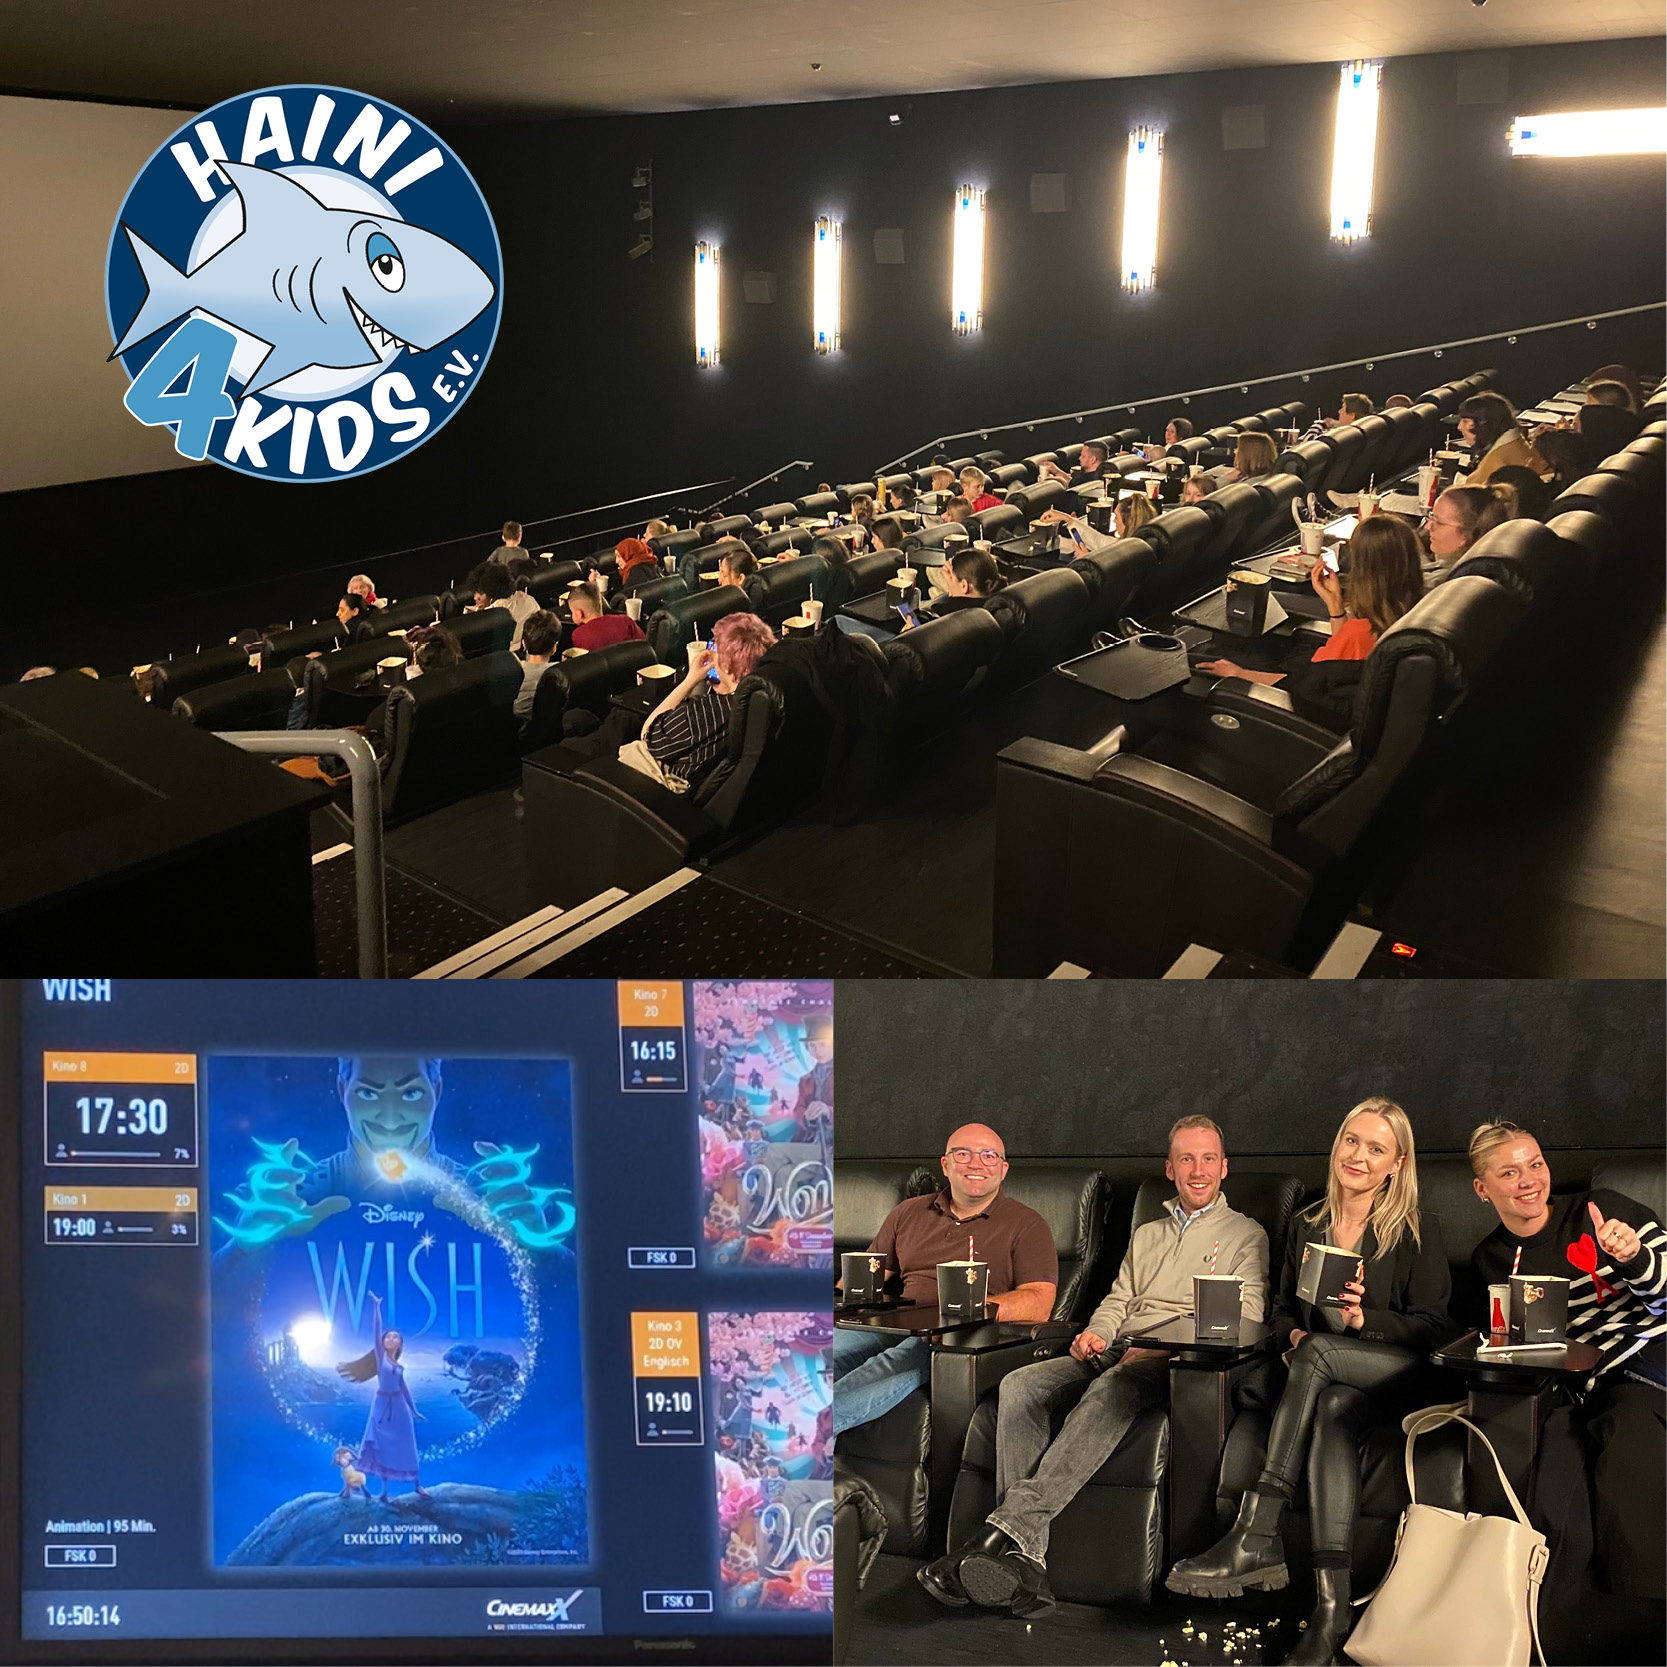 Herzenswunsch erfüllt Kino Event Wish Disney HAINI4KIDS Bielefeld